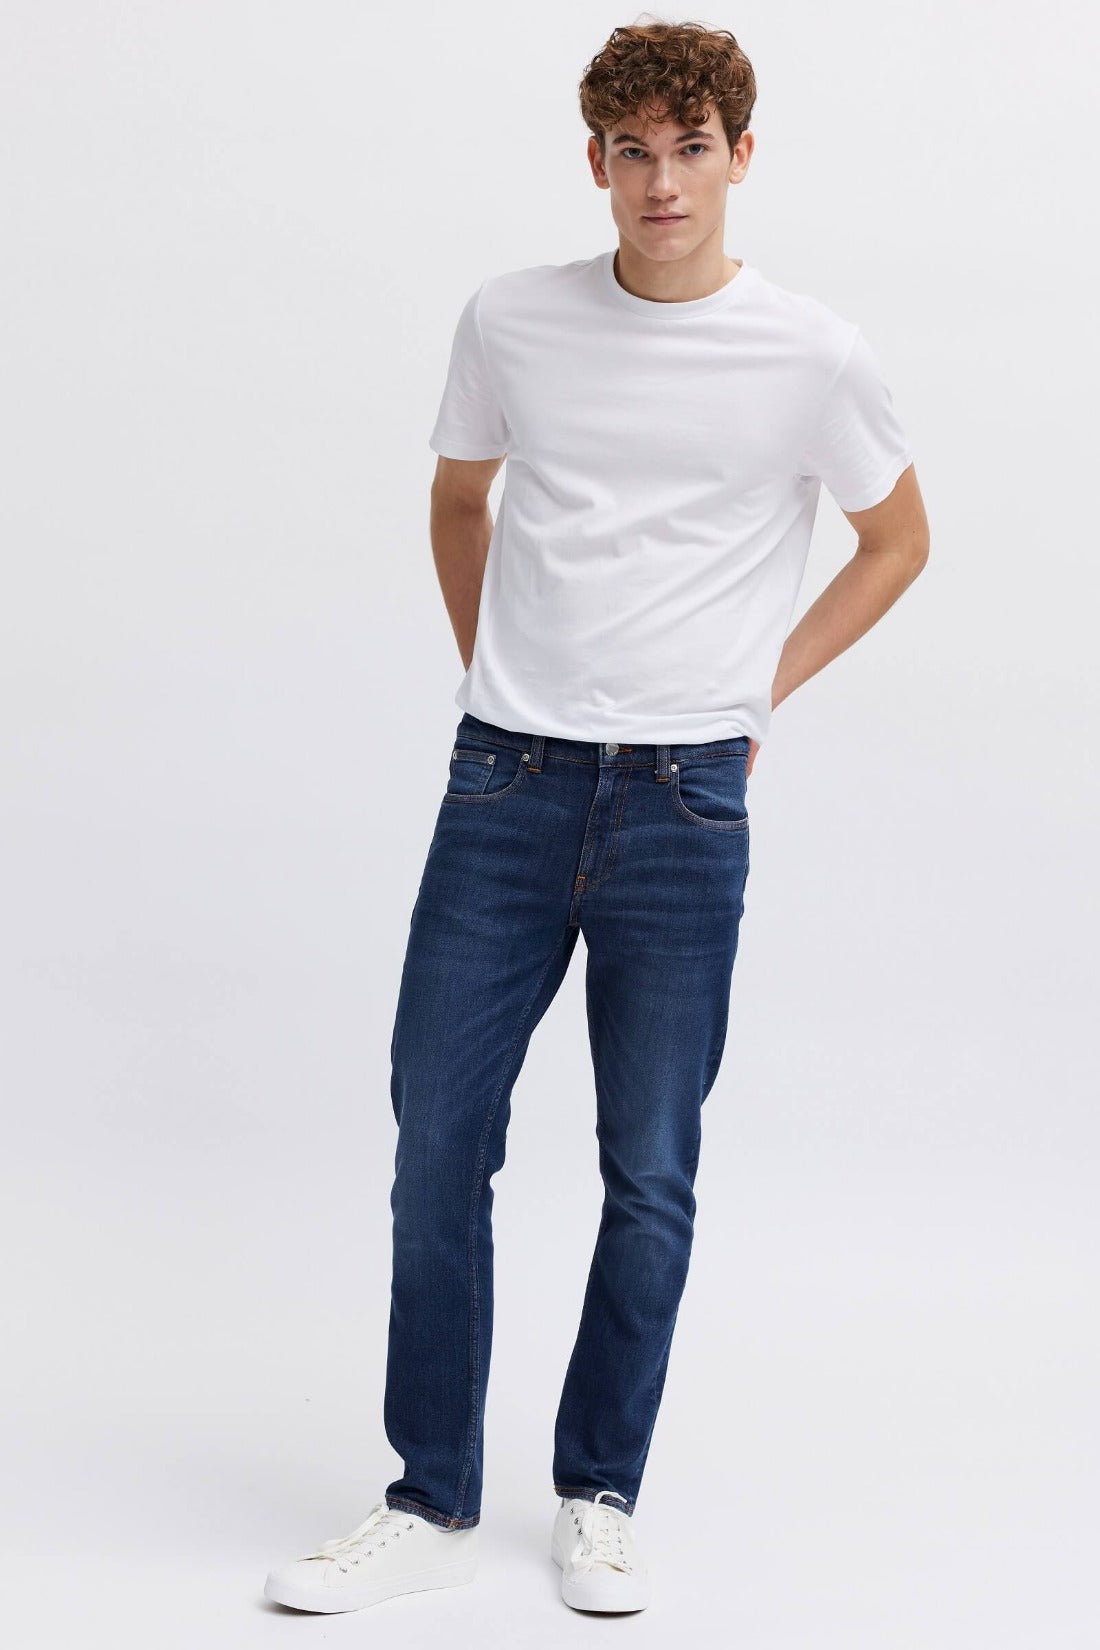 stylish jeans for men, organsk 